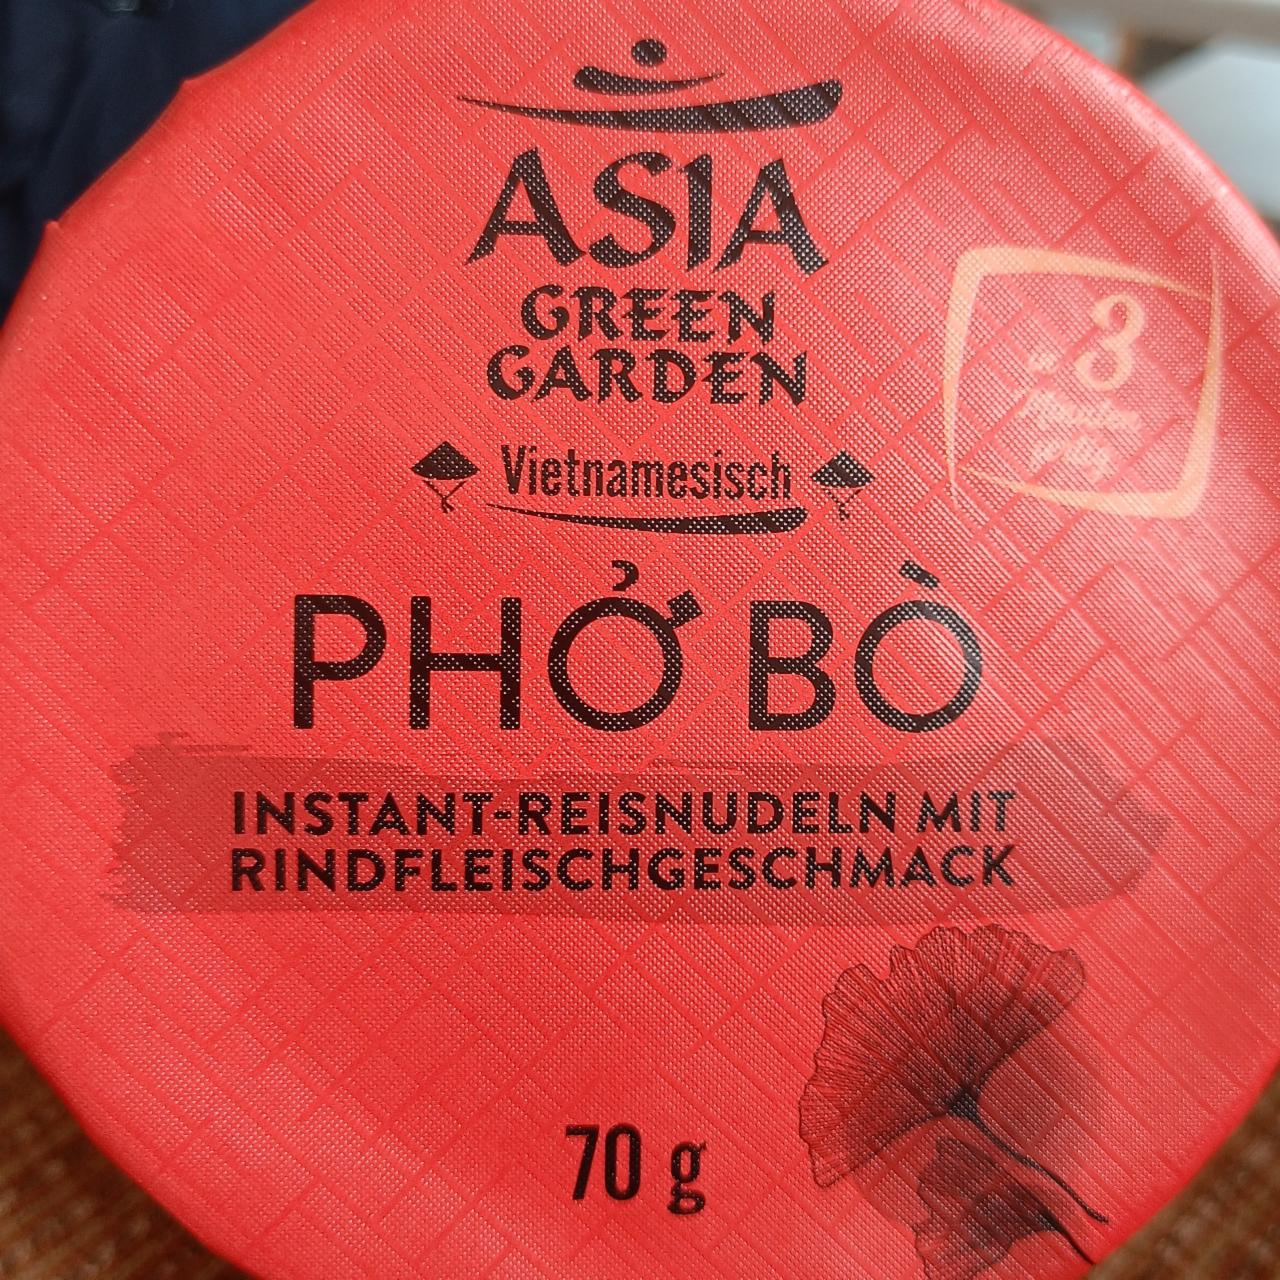 Fotografie - Pho Bo Instant-Reisnudeln mit Rindfleischgeschmack Asia Green Garden